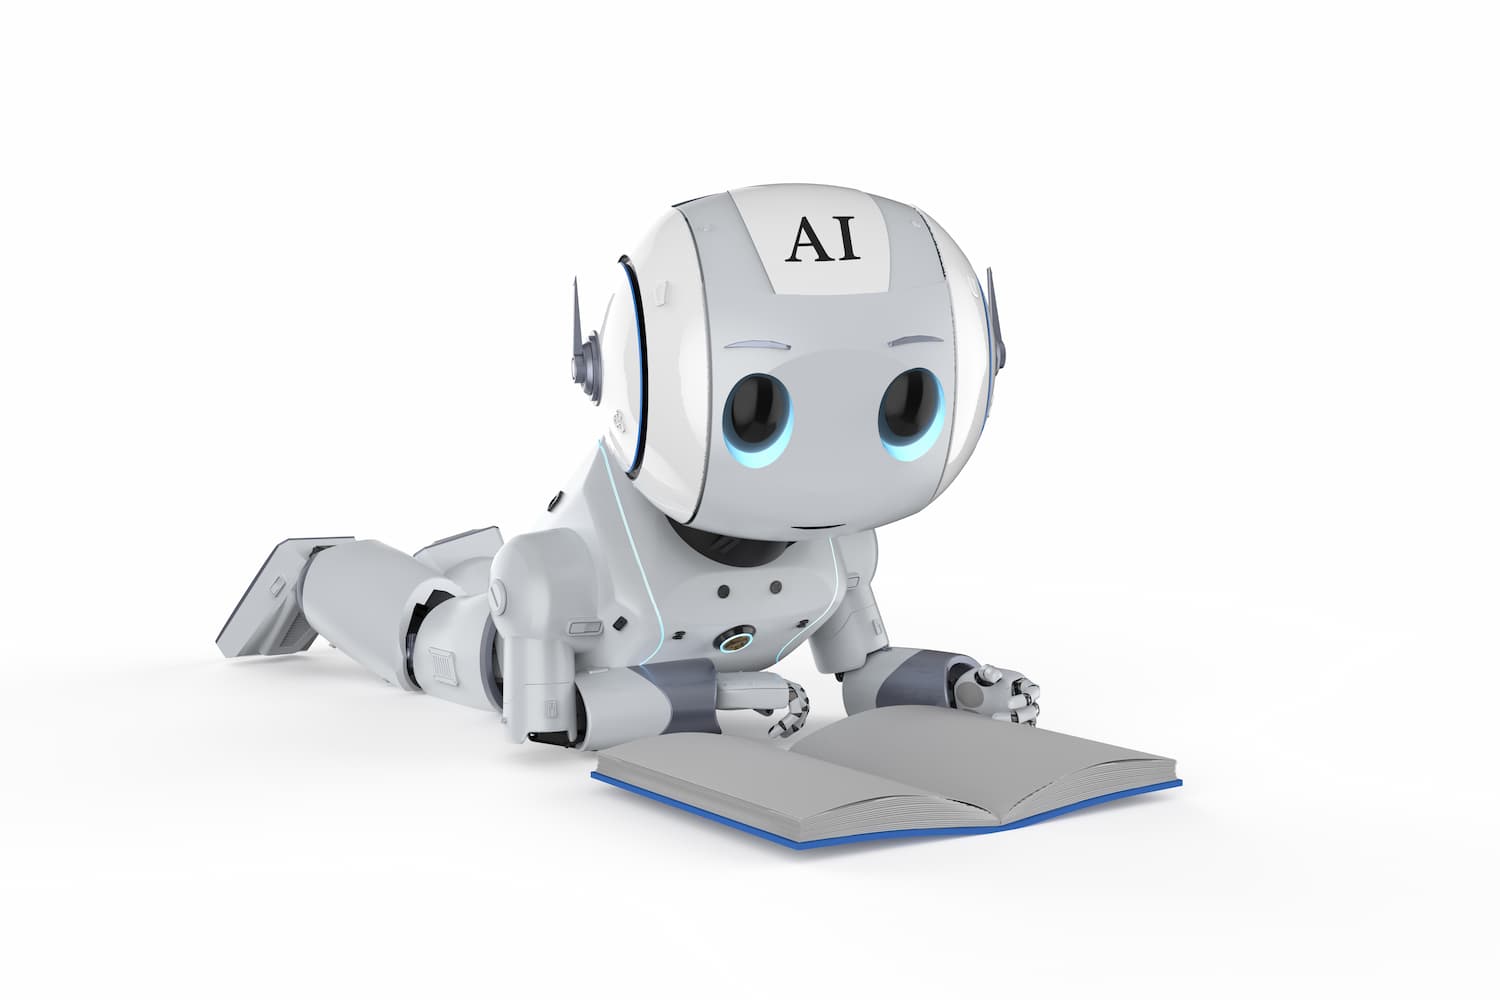 Imagem de robô estudando, representando como chatbots aprendem.